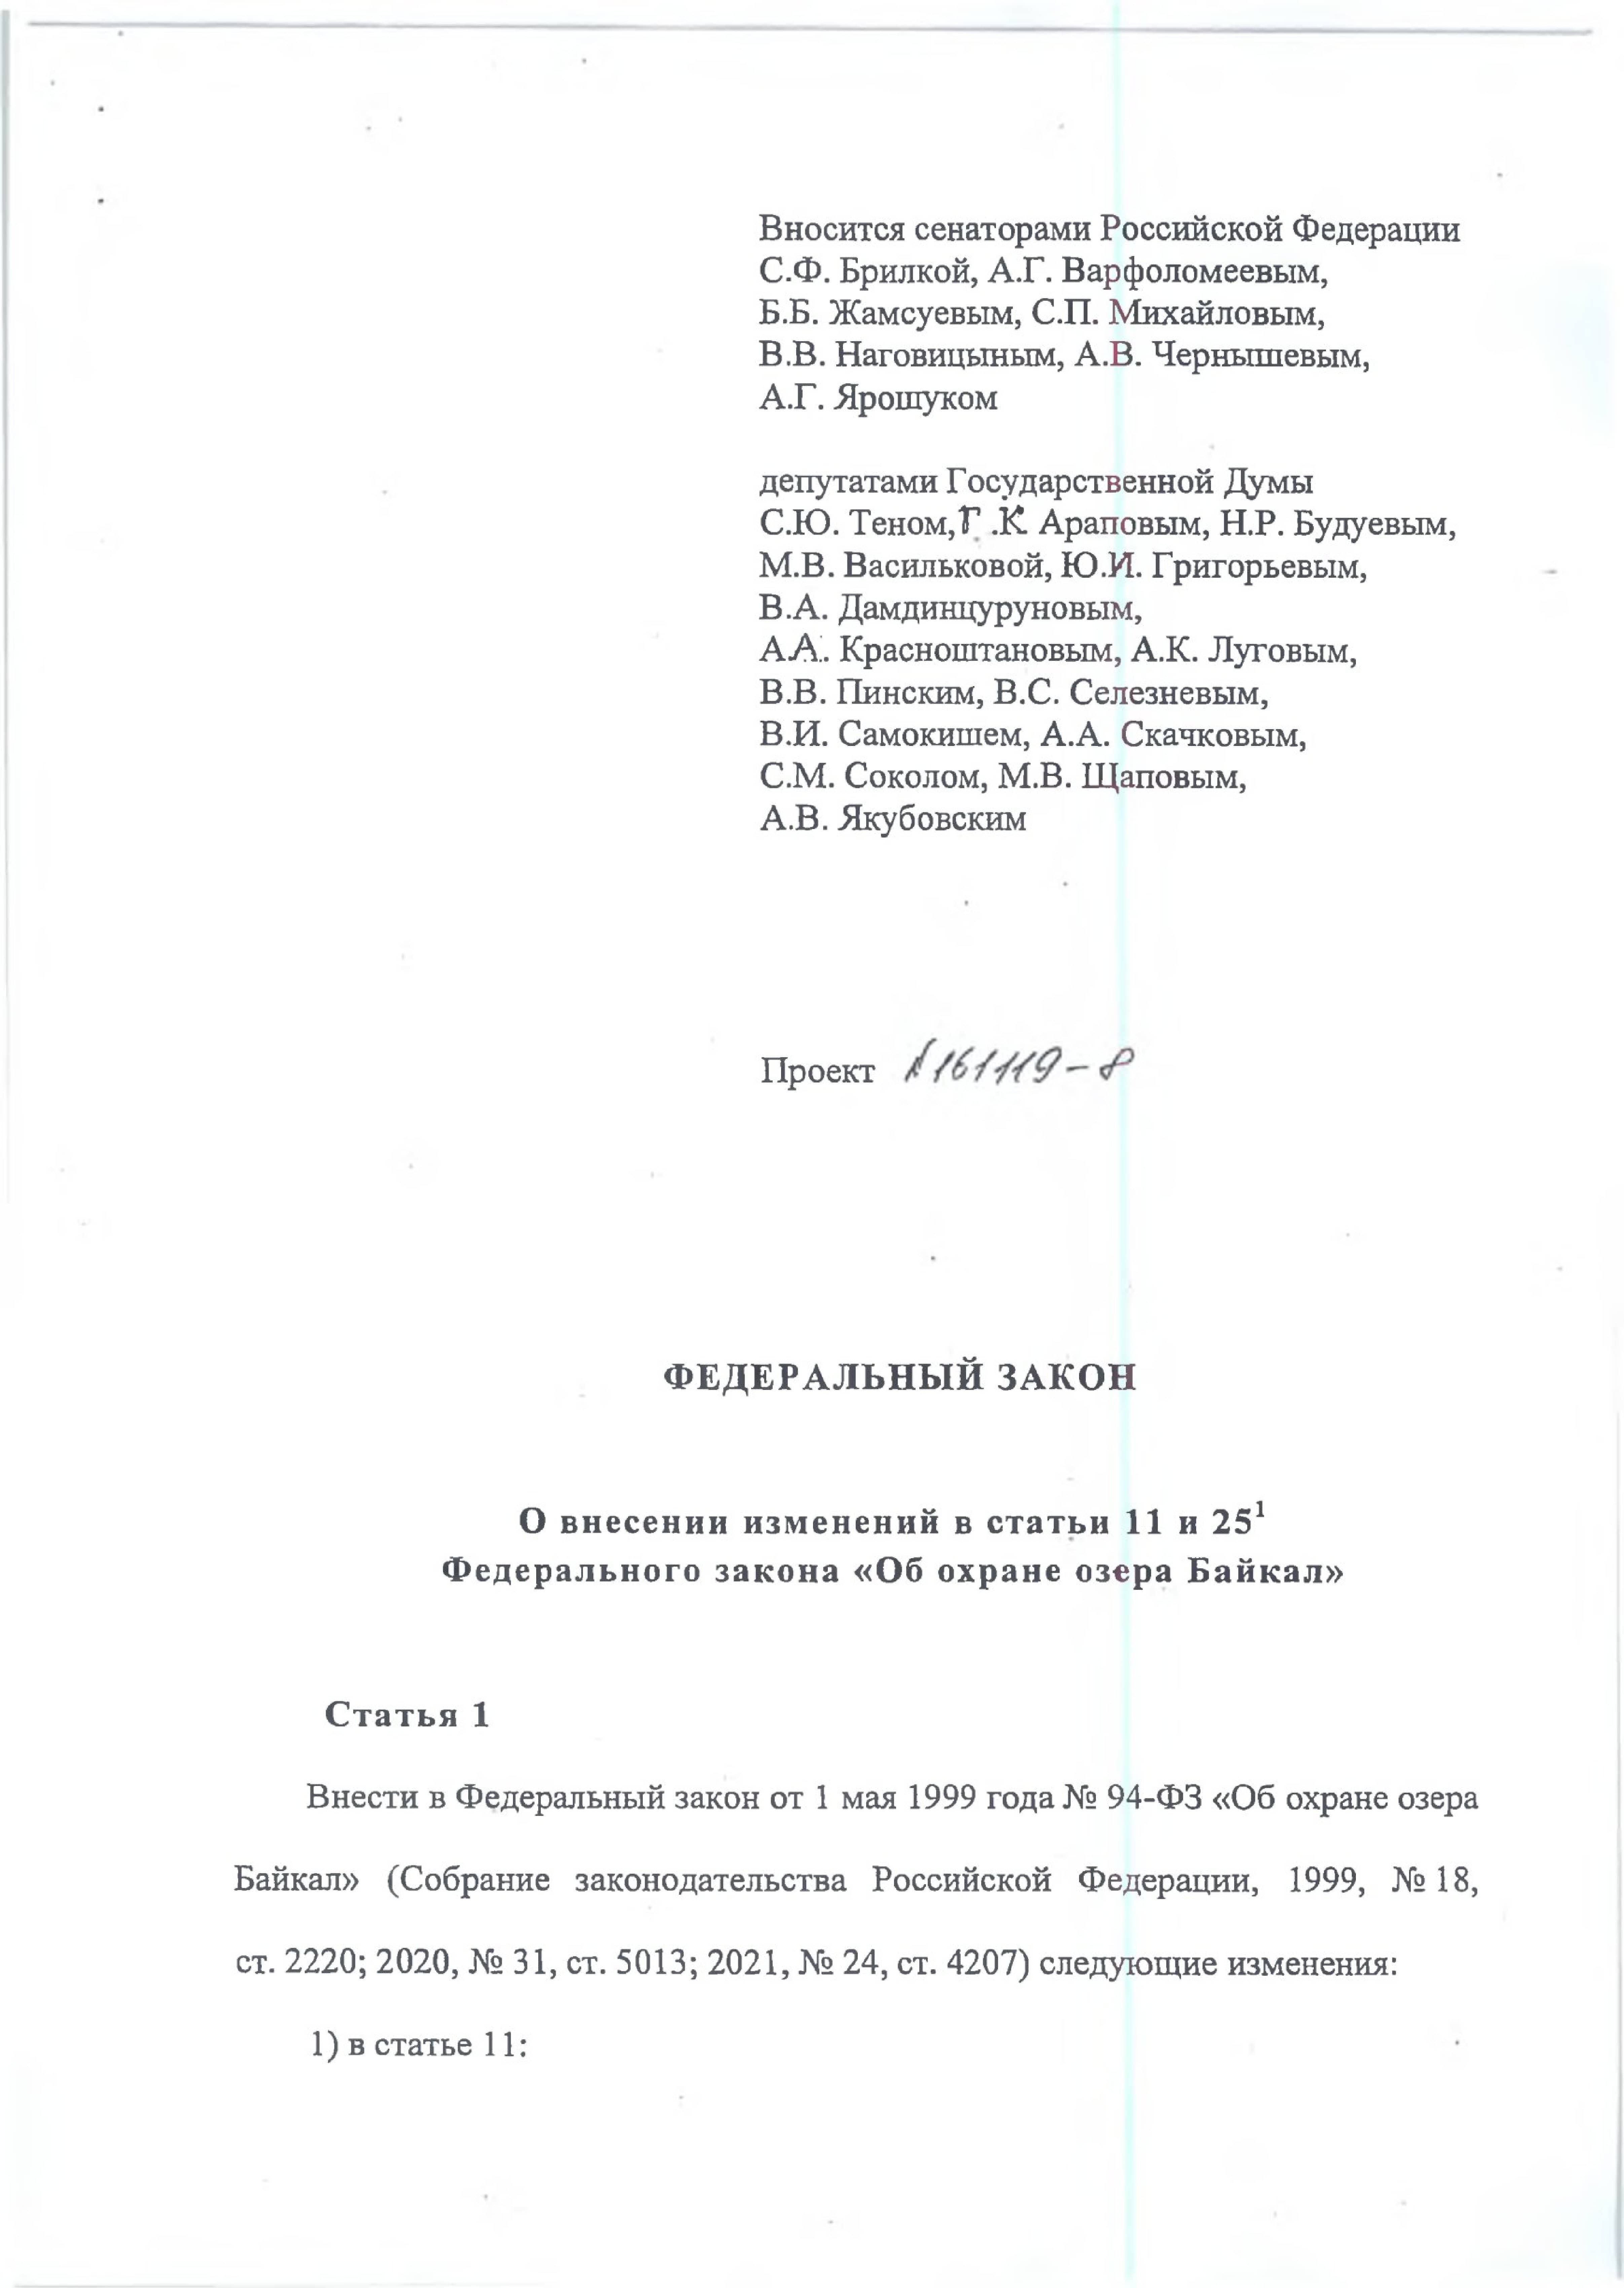 В редакцию поступили новые предложения к документам по охране озера Байкал - фото 8